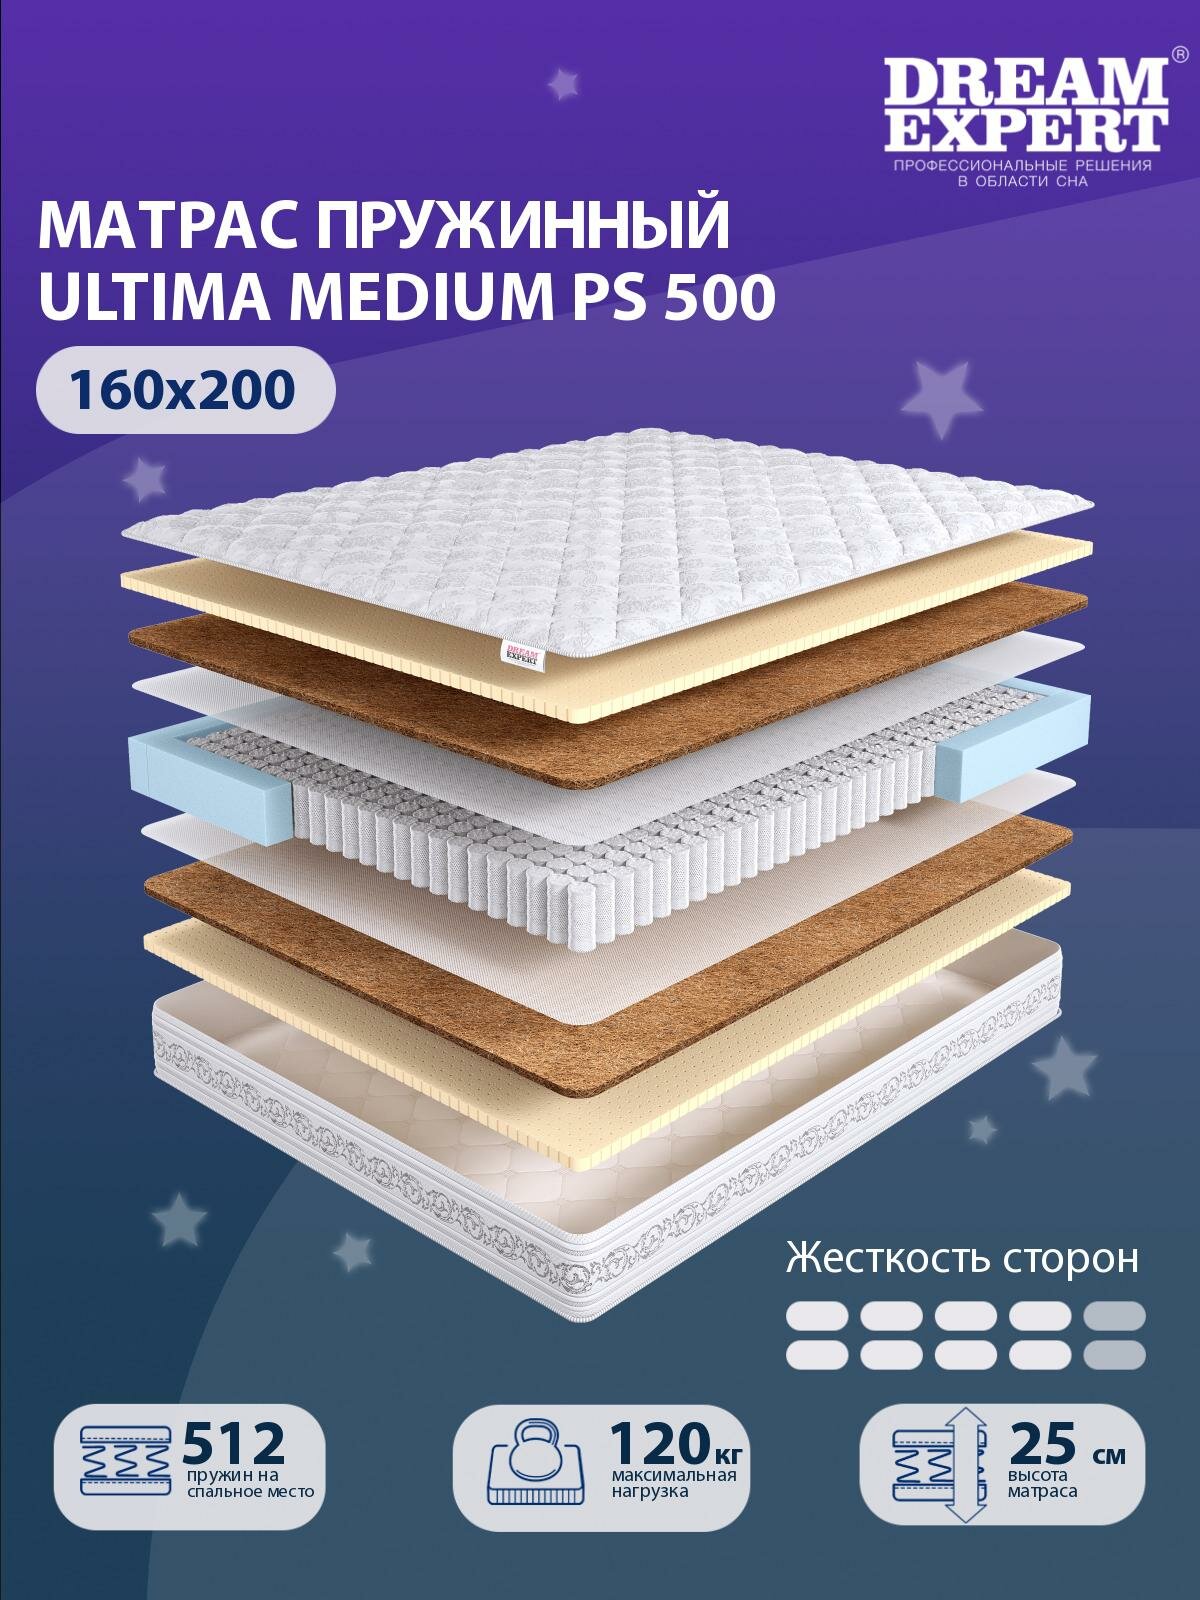 Матрас DreamExpert Ultima Medium PS500 выше средней жесткости, двуспальный, независимый пружинный блок, на кровать 160x200